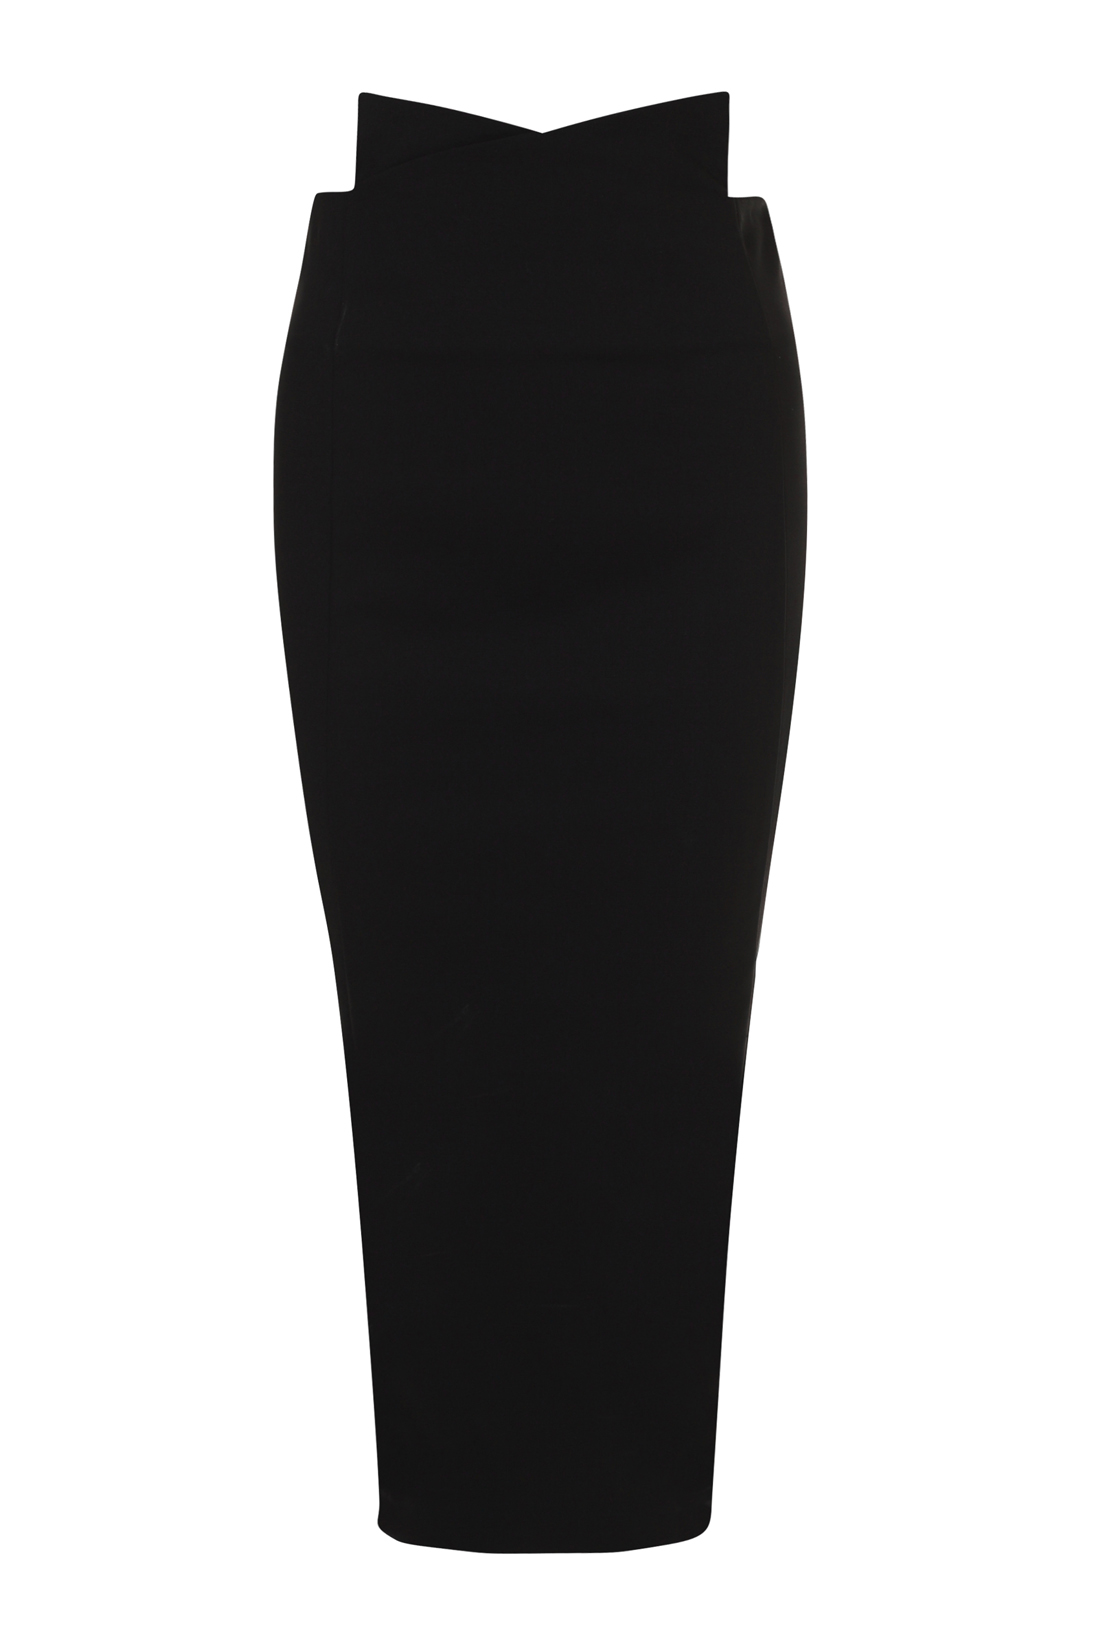 Чёрная юбка-миди (арт. baon B478037), размер S, цвет черный Чёрная юбка-миди (арт. baon B478037) - фото 3